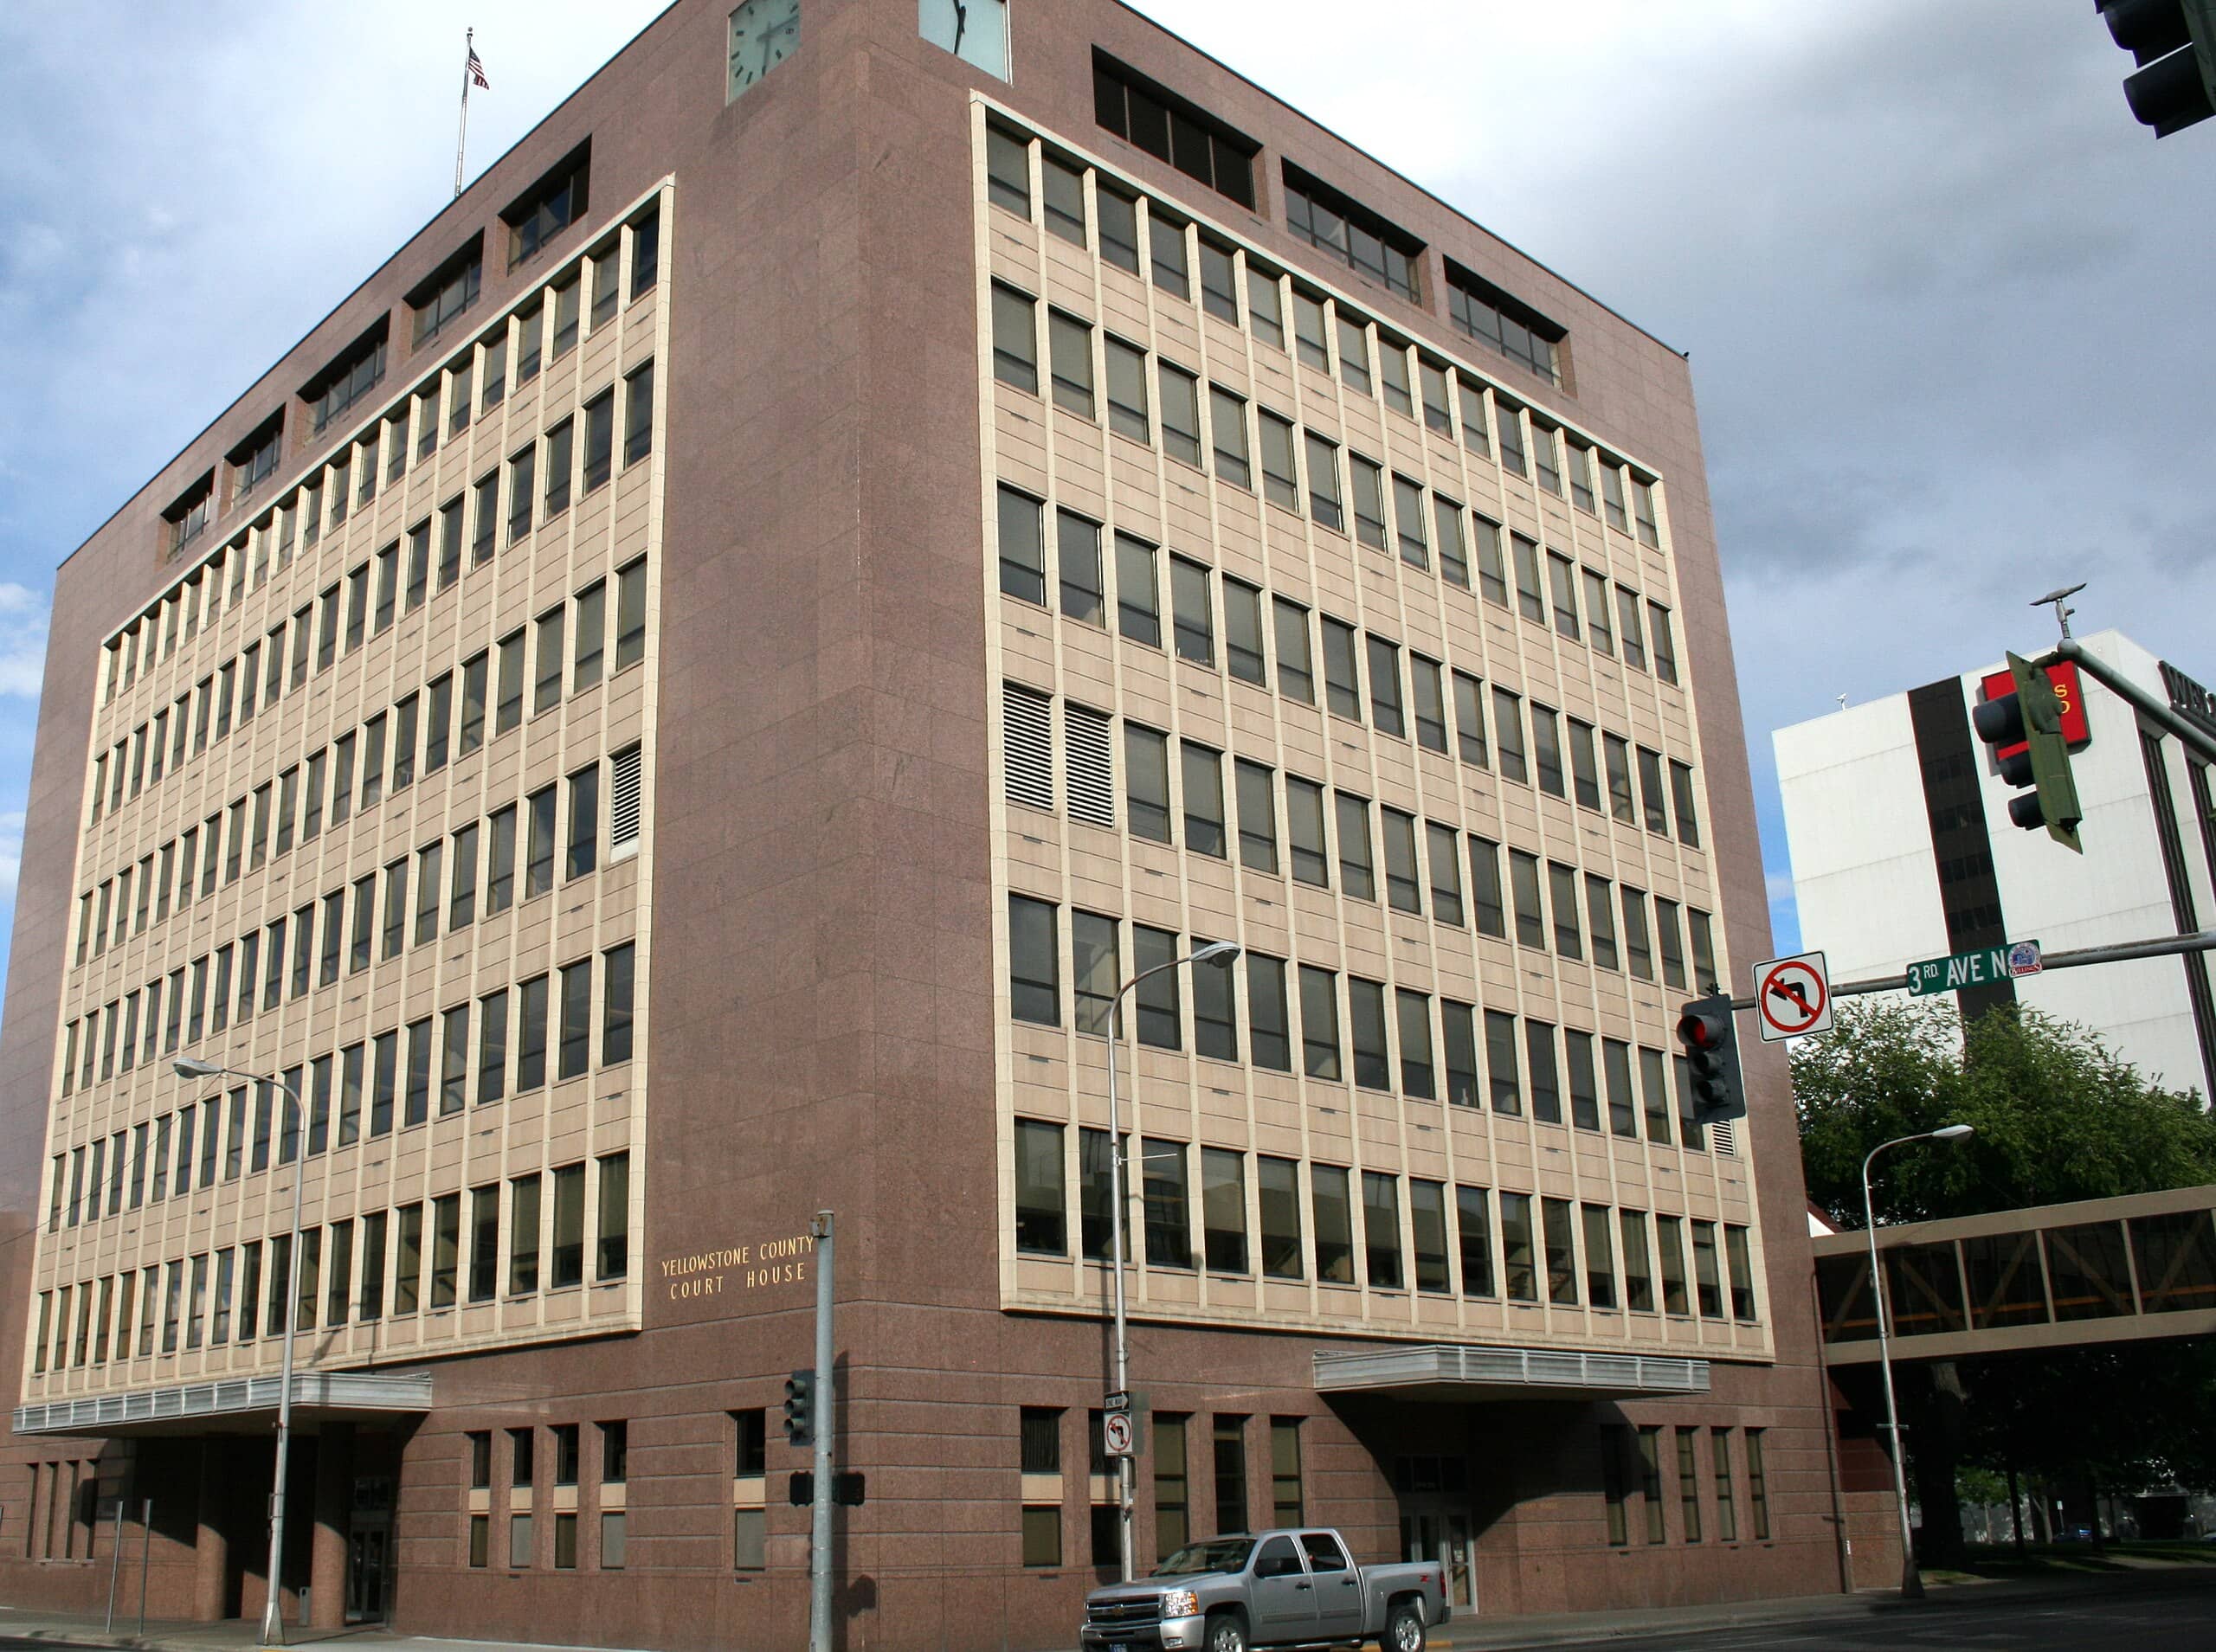 Image of Billings Municipal Court